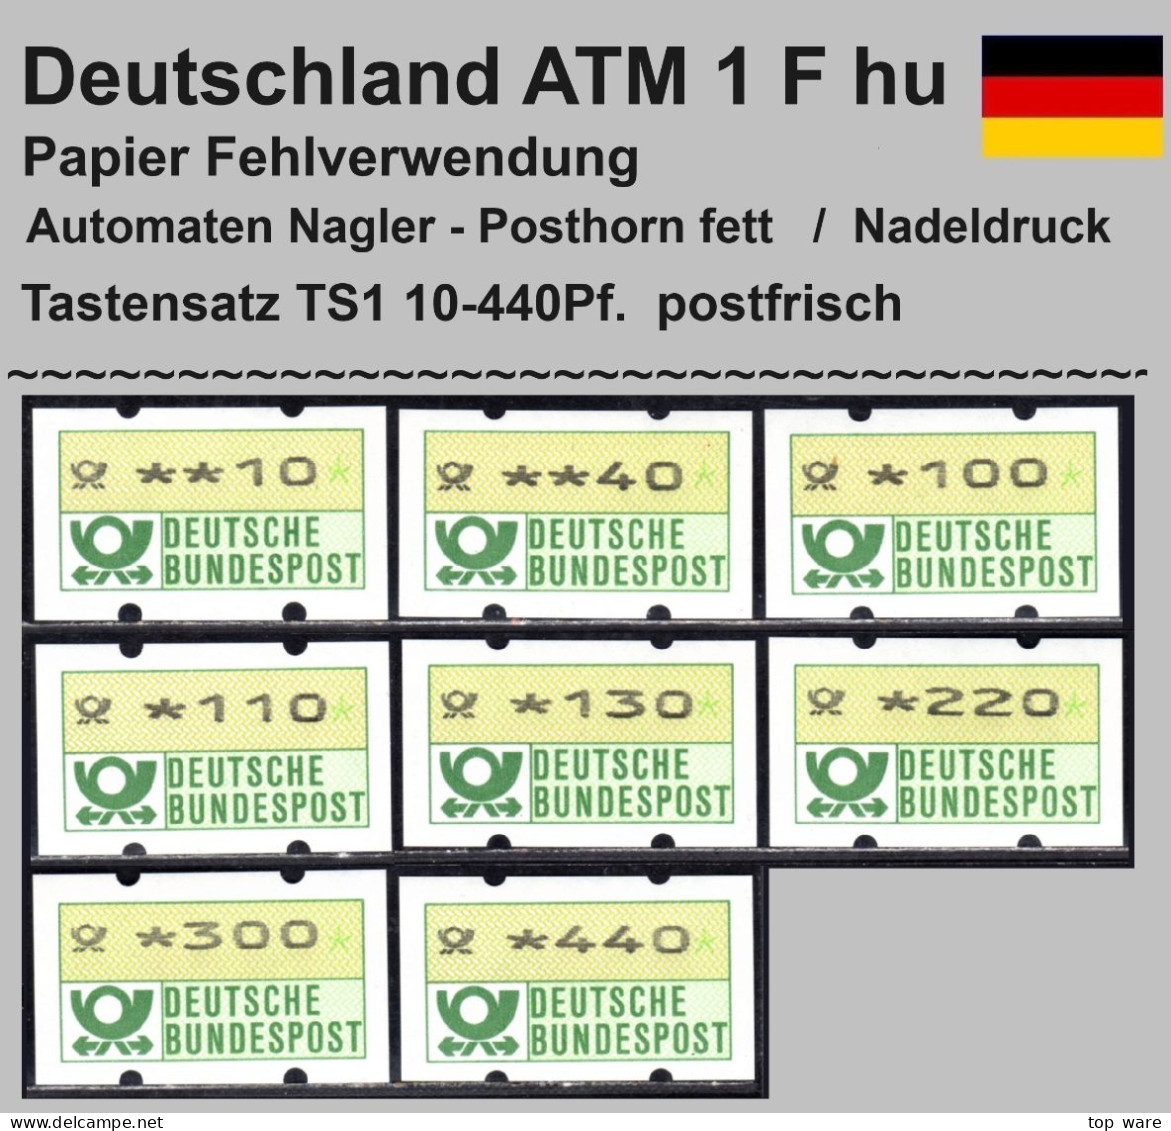 Deutschland Bund ATM 1 F Hu / Fehlverwendung Nagler Posthornaufdruck Tastensatz TS1 Postfrisch - Machine Labels [ATM]